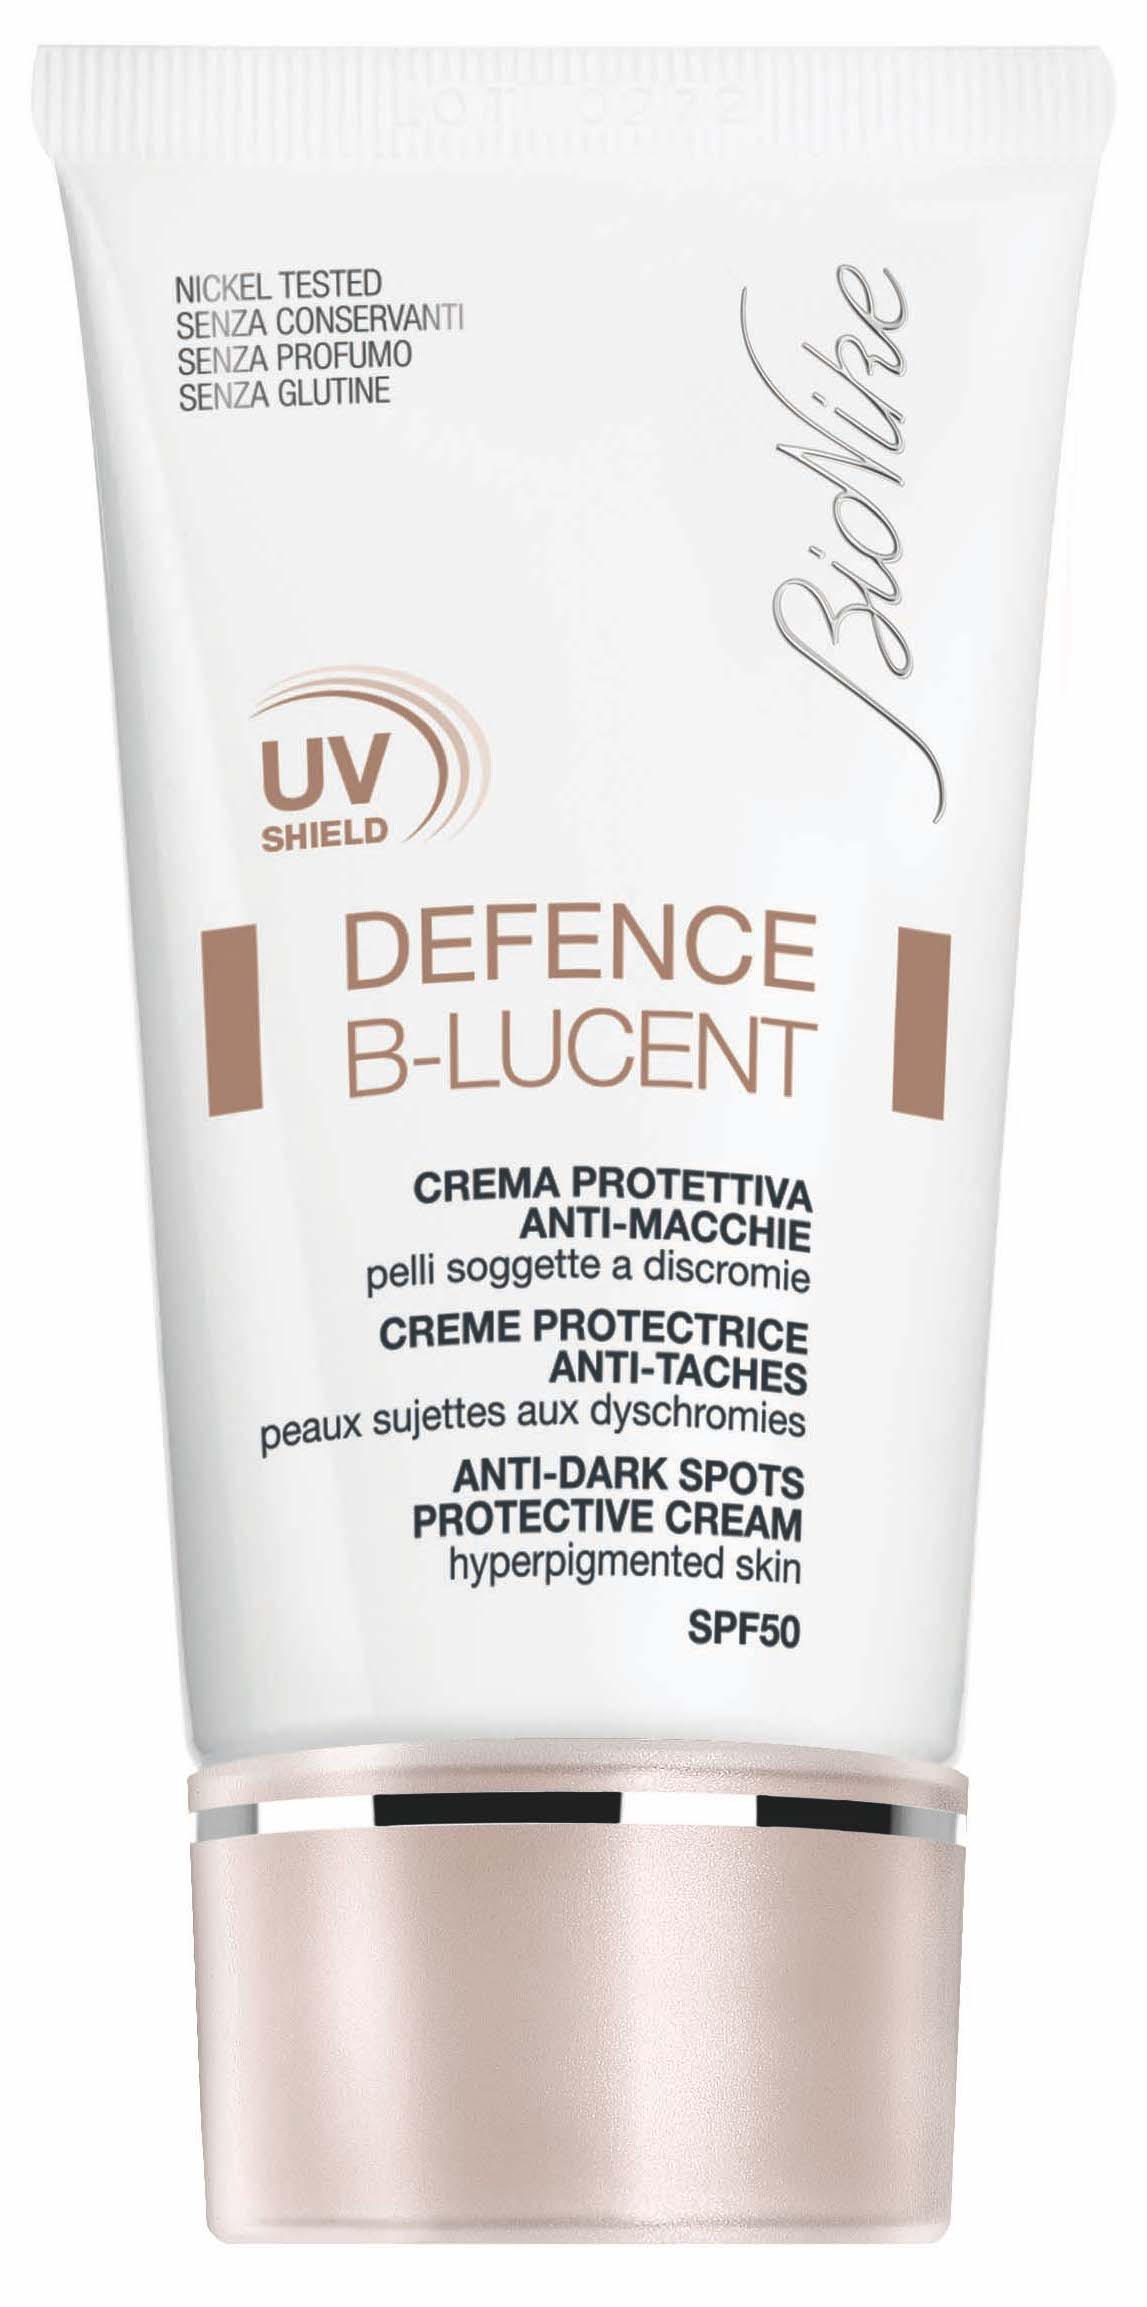 Defence B-LUCENT di Bionike: crema dall'alta protezione UV, difende la pelle giorno per giorno